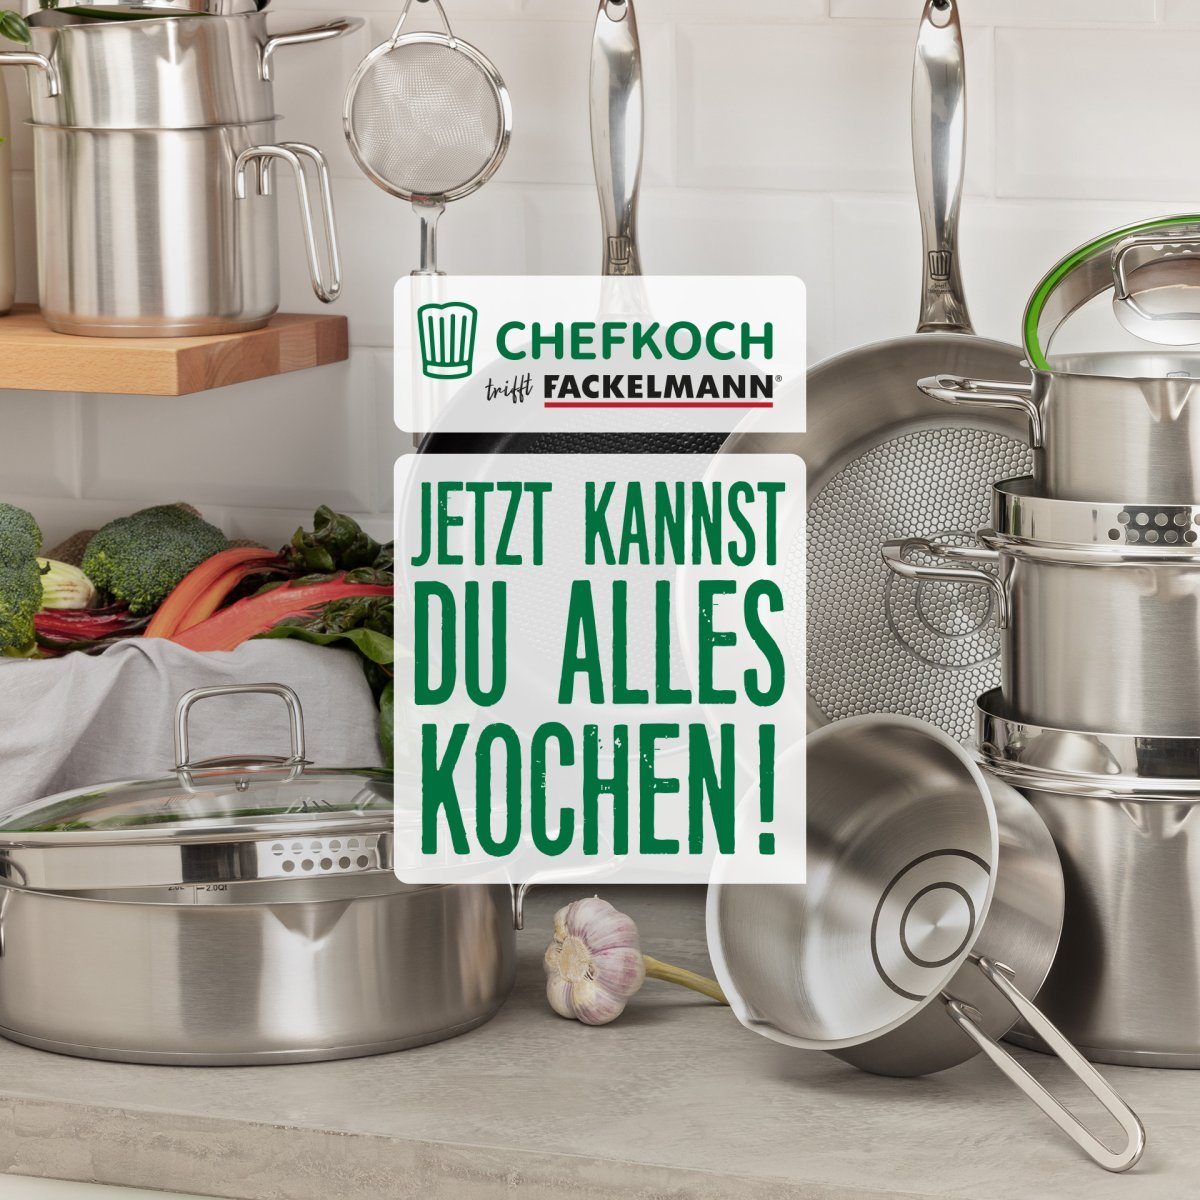 Milchtopf Chefkoch trifft Fackelmann München